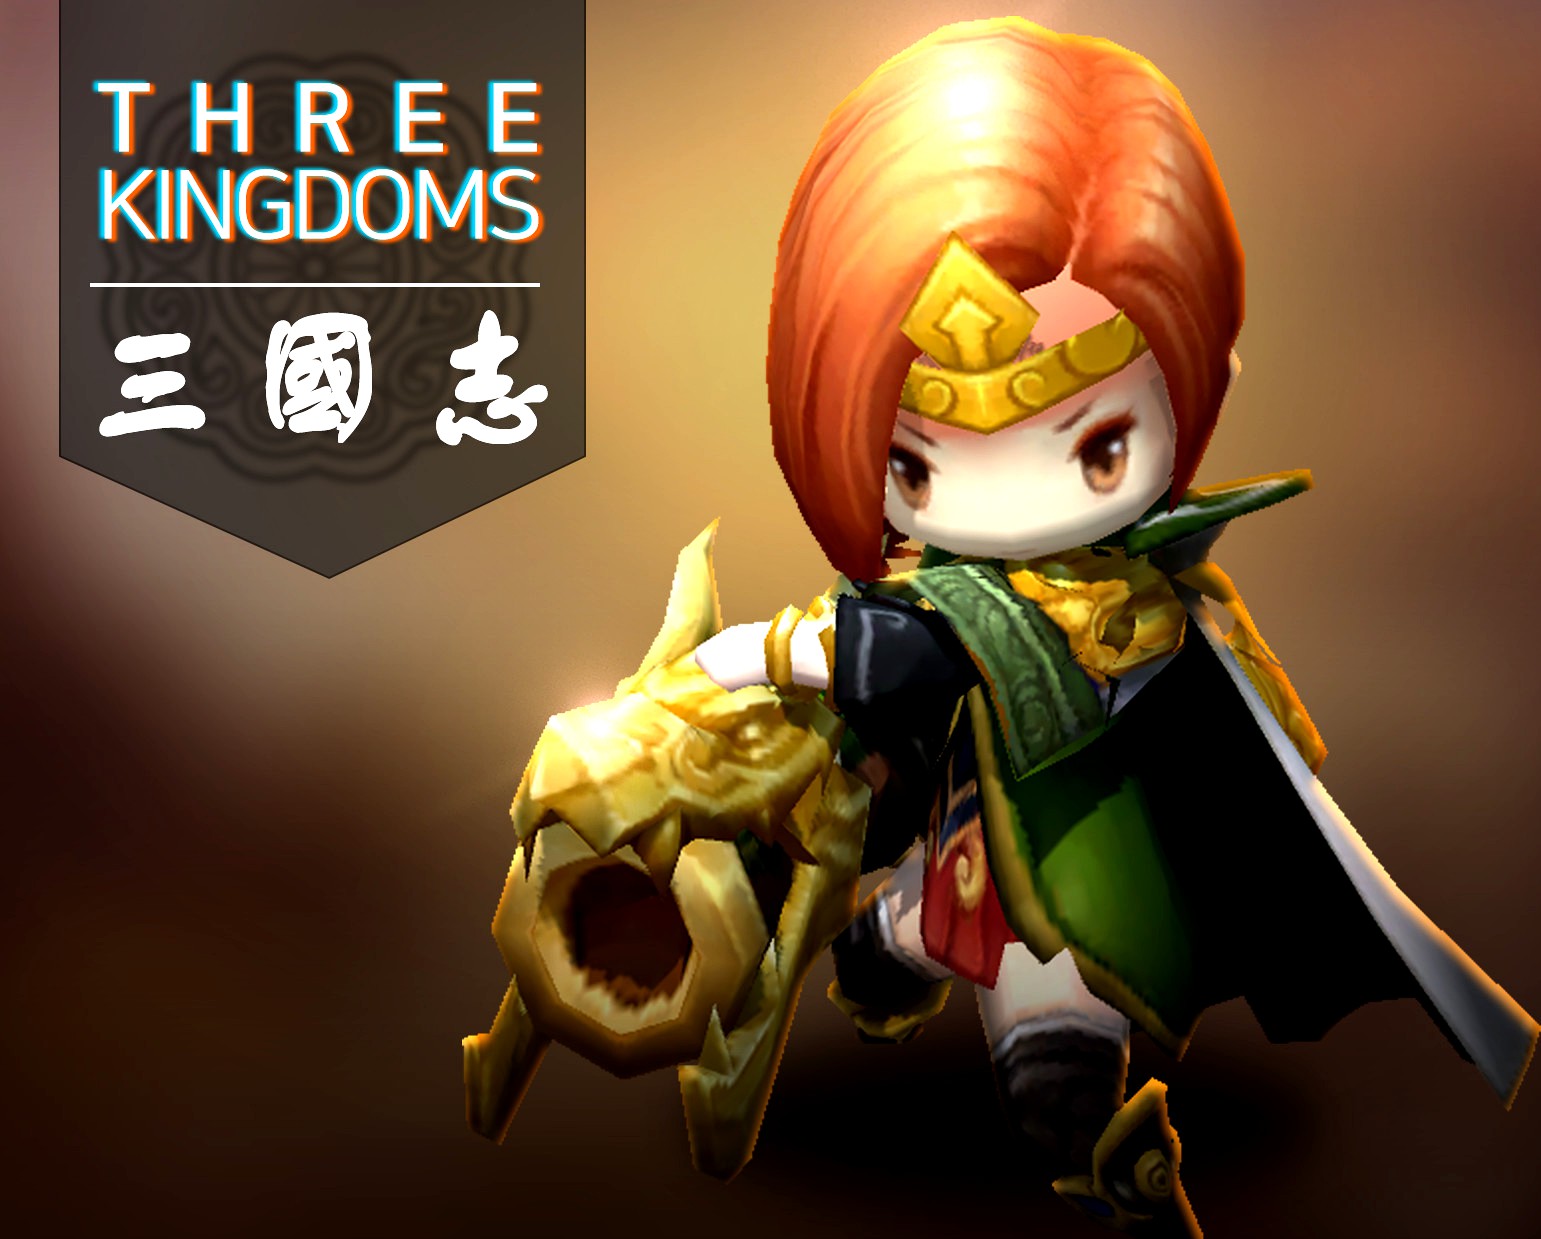 Three kingdoms - Guan Yinping